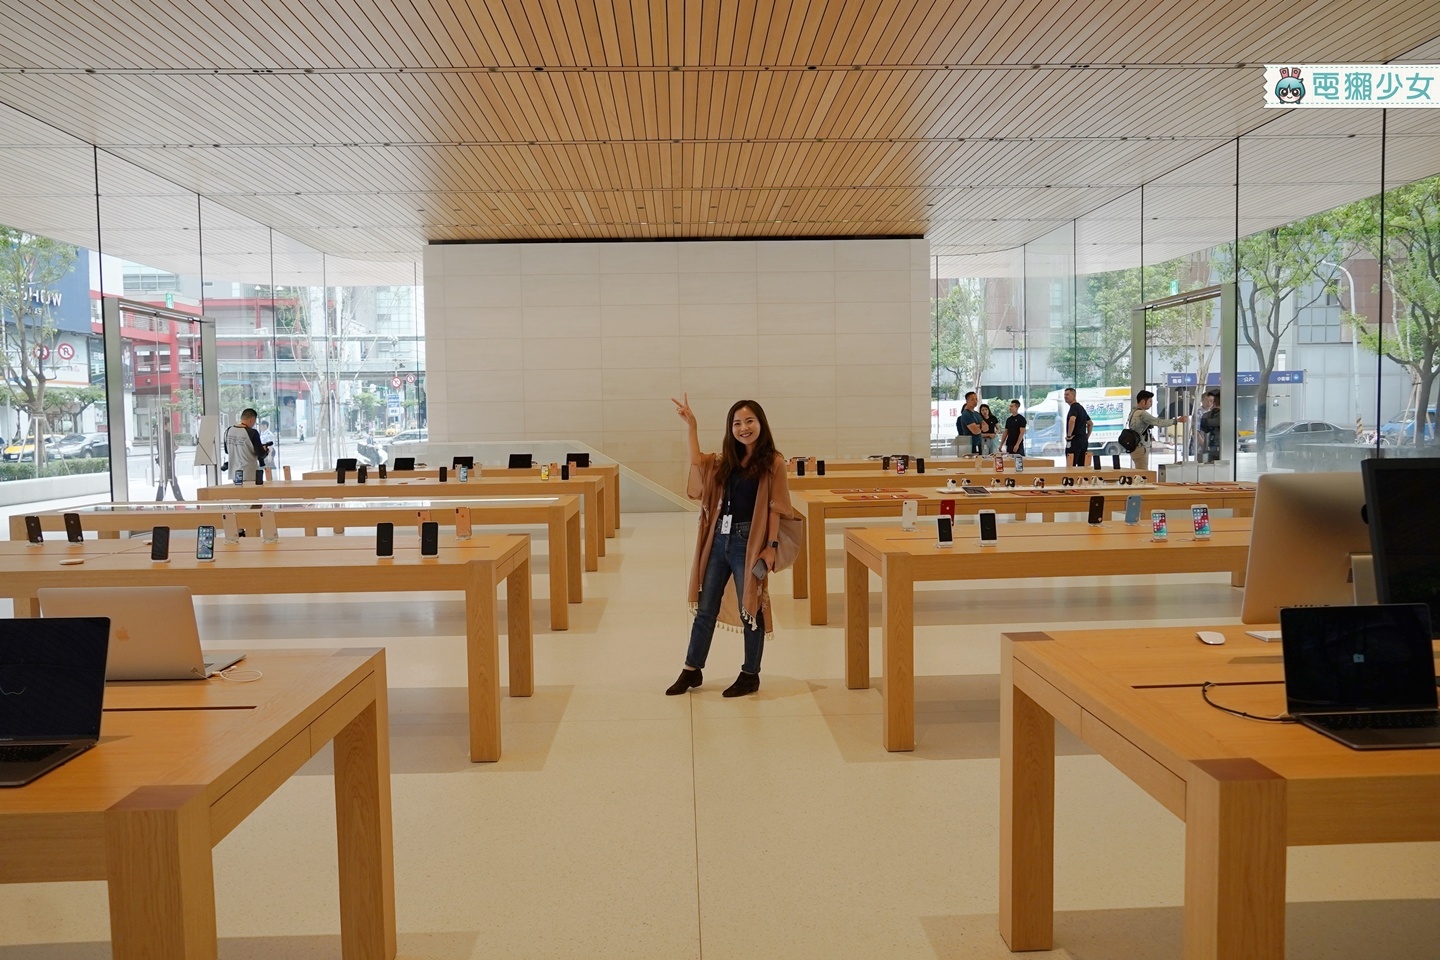 出門｜搶先看！本週六正式開幕Apple信義A13 台灣首家獨棟設計的Apple Store